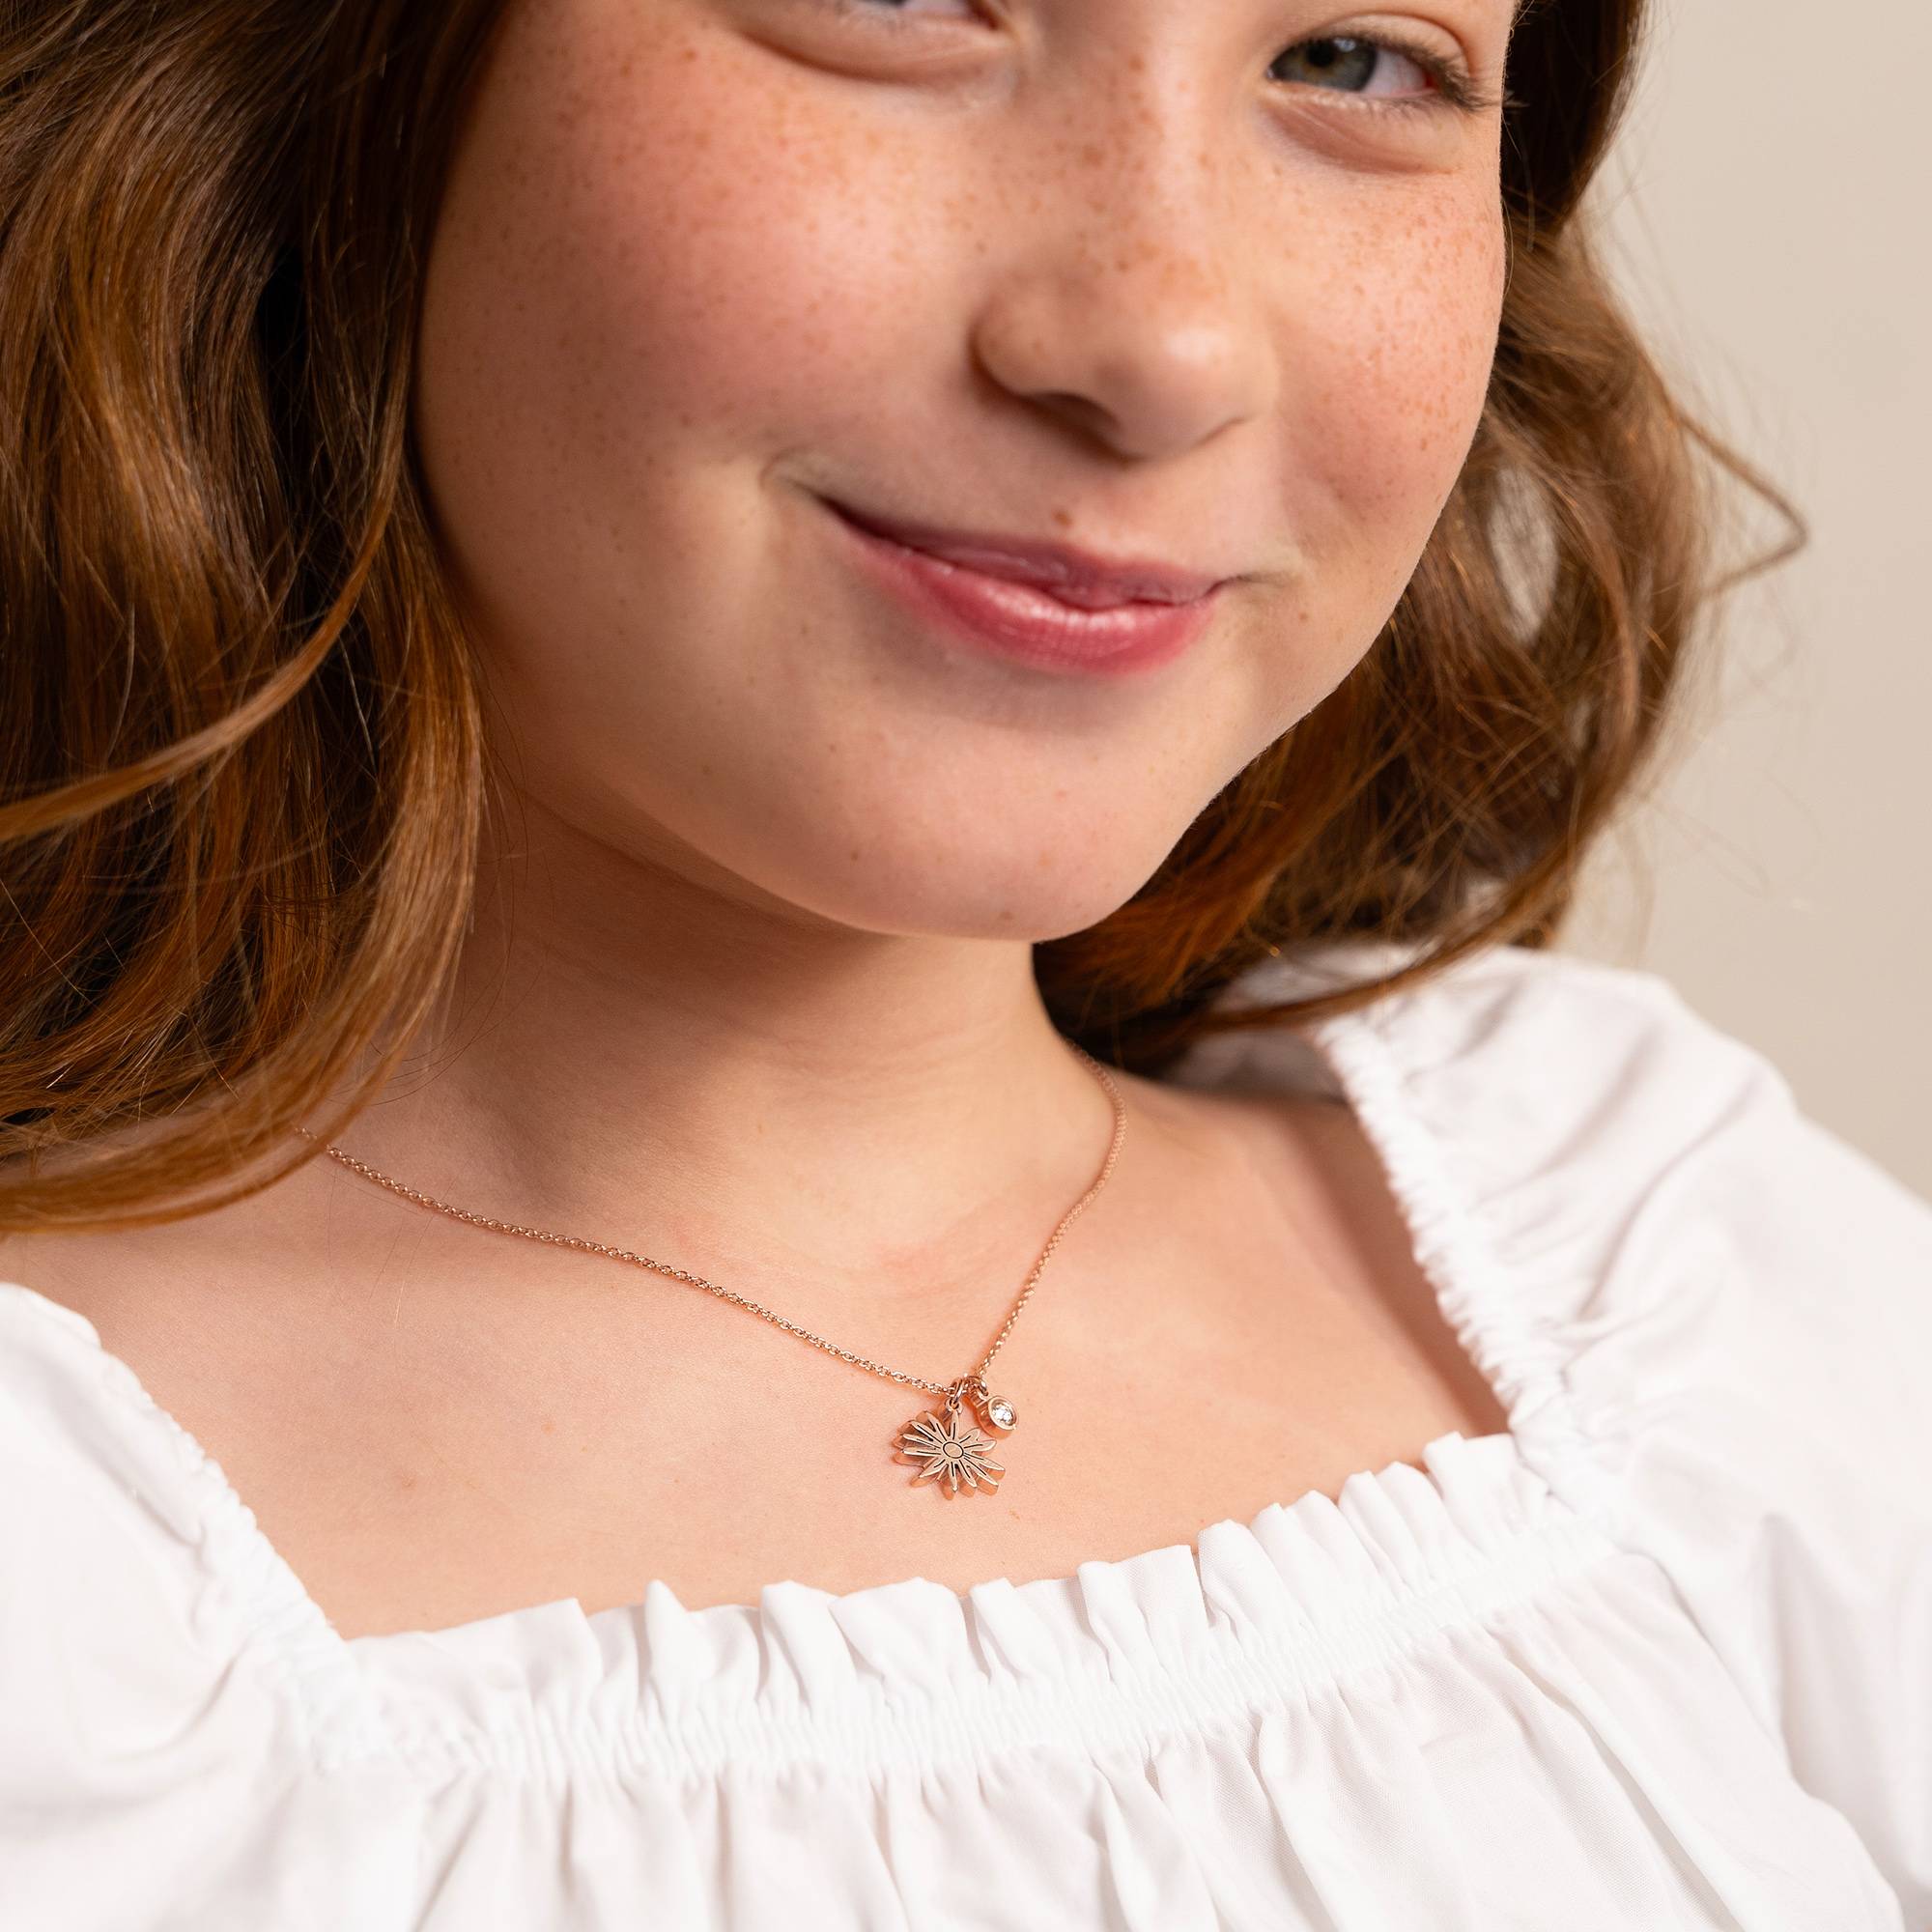 Blühende Geburtsblume Initial-Halskette mit Geburtsstein für Mädchen - 750er rosé vergoldetes Silber-1 Produktfoto